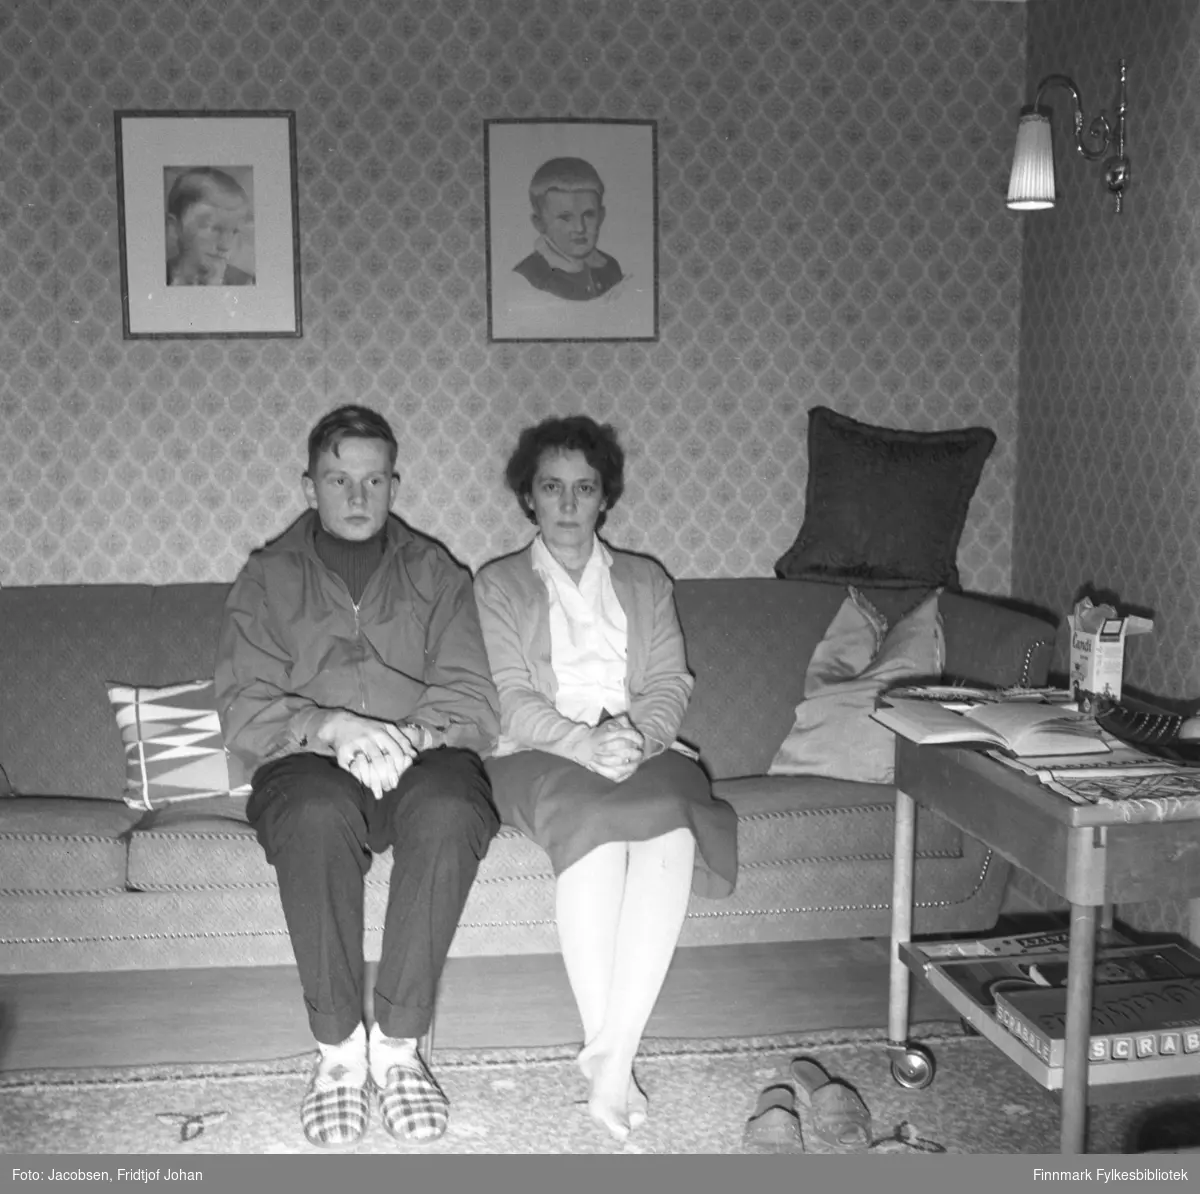 Arne Jacobsen og hans mor Aase poserer for fotografen i familiens hjem i Storvannsveien. Arne har mørk bukse, genser og litt lysere jakke på seg. På føttene har han rutete tøfler. Aase har et mørkt skjørt, lys bluse og en tynn jakke på seg. Sofaen de sitter i er forholdsvis mørk og flere sofaputer ligger i den. To bilder henger på veggen bak personene og en lampe henger til høyre på bildet. Et gulvteppe ligger på gulvet foran dem til høyre står  et bord med noen spill og andre ting oppå. Tapetet er mønstret.